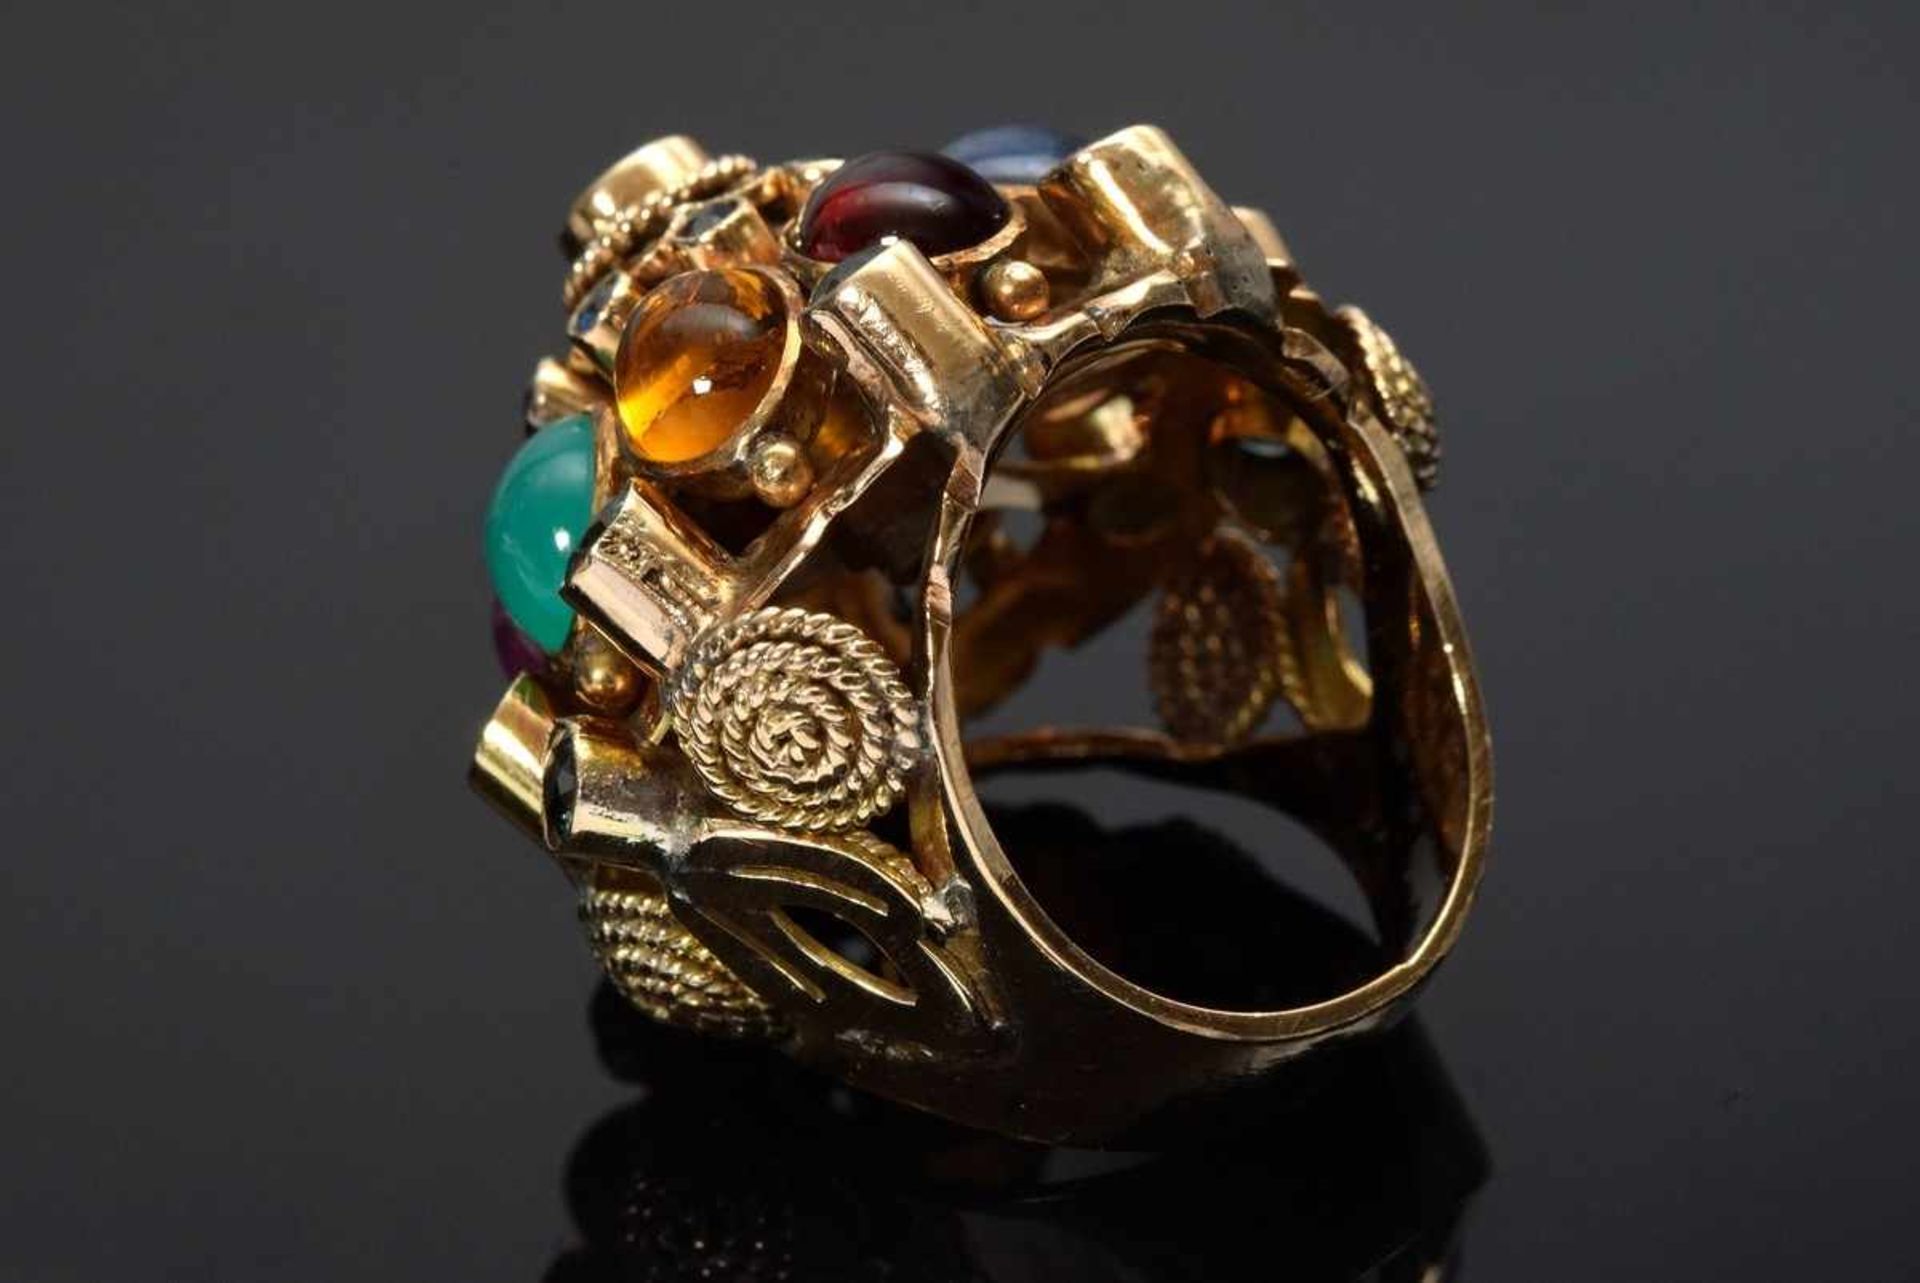 Orientalischer GG 585 Ring mit Cabochons und facettierten Edelsteinen: Rubin, Saphir, Granat, - Bild 3 aus 3